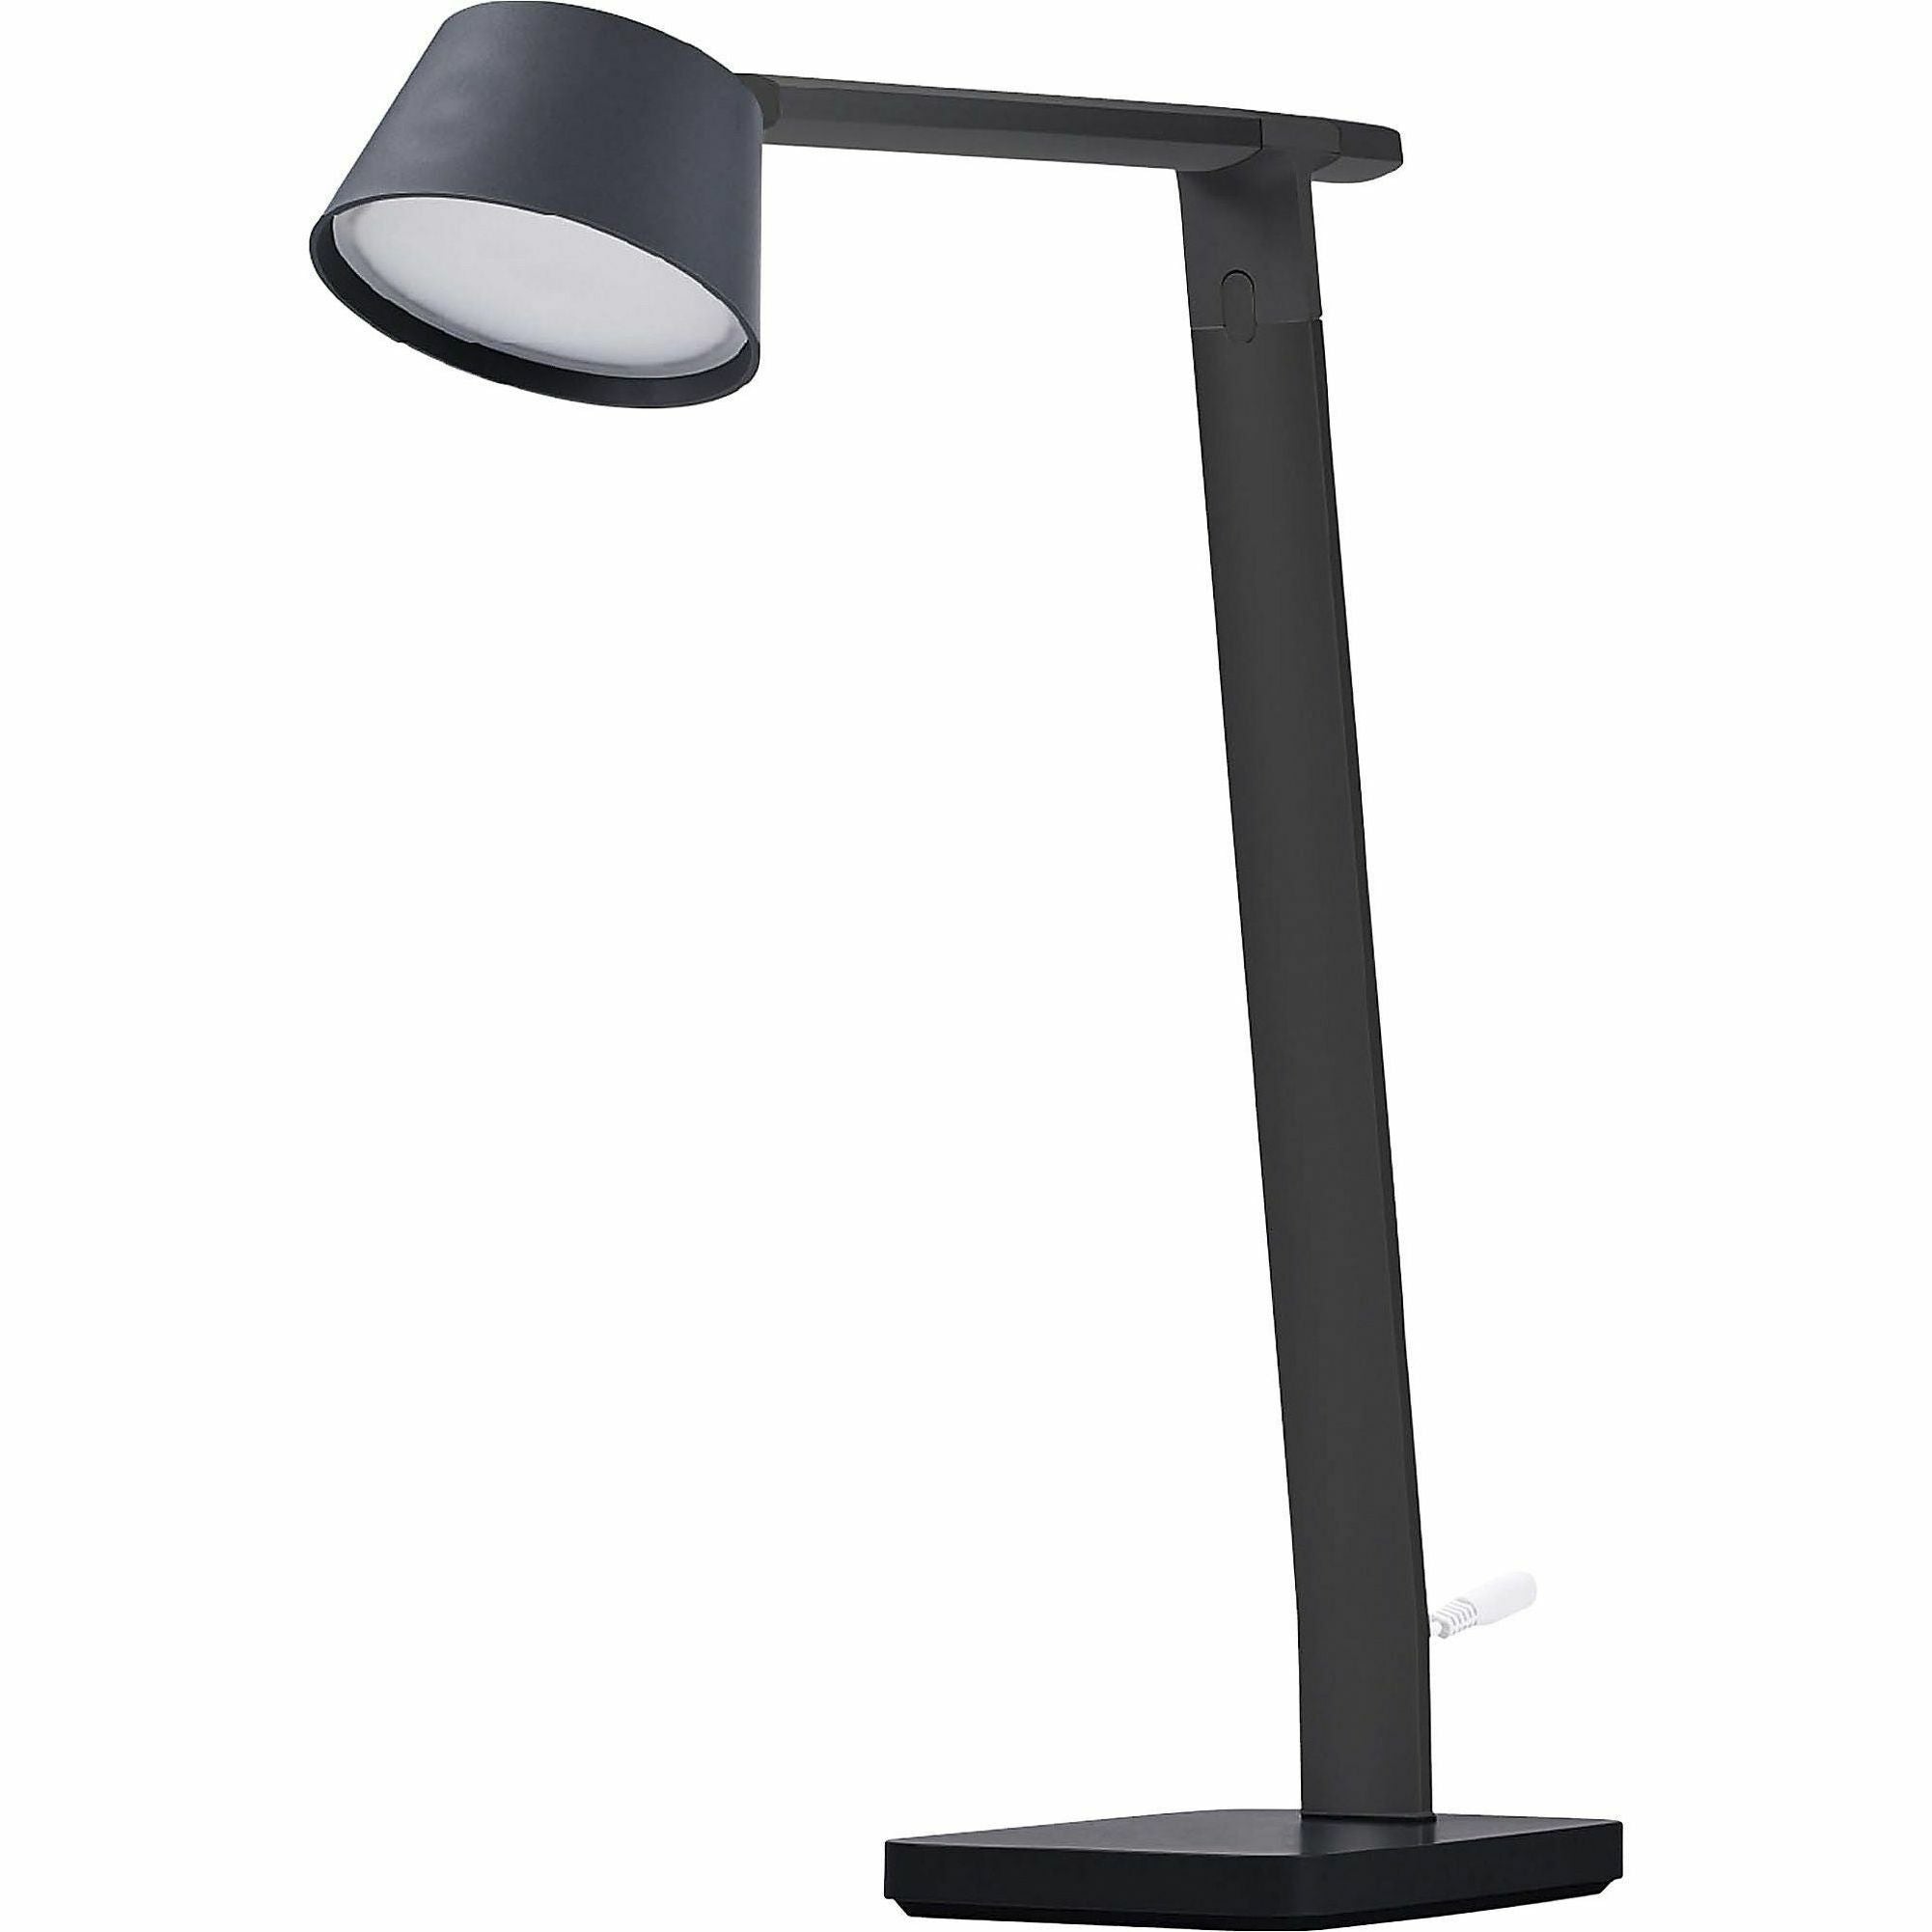 bostitch-verve-adjustable-led-desk-lamp-led-bulb-adjustable-dimmable-adjustable-brightness-clock-durable-usb-charging-swivel-base-color-changing-mode-aluminum-desk-mountable-black-for-desk-alexa-supported_bos2200usbsmbk - 2